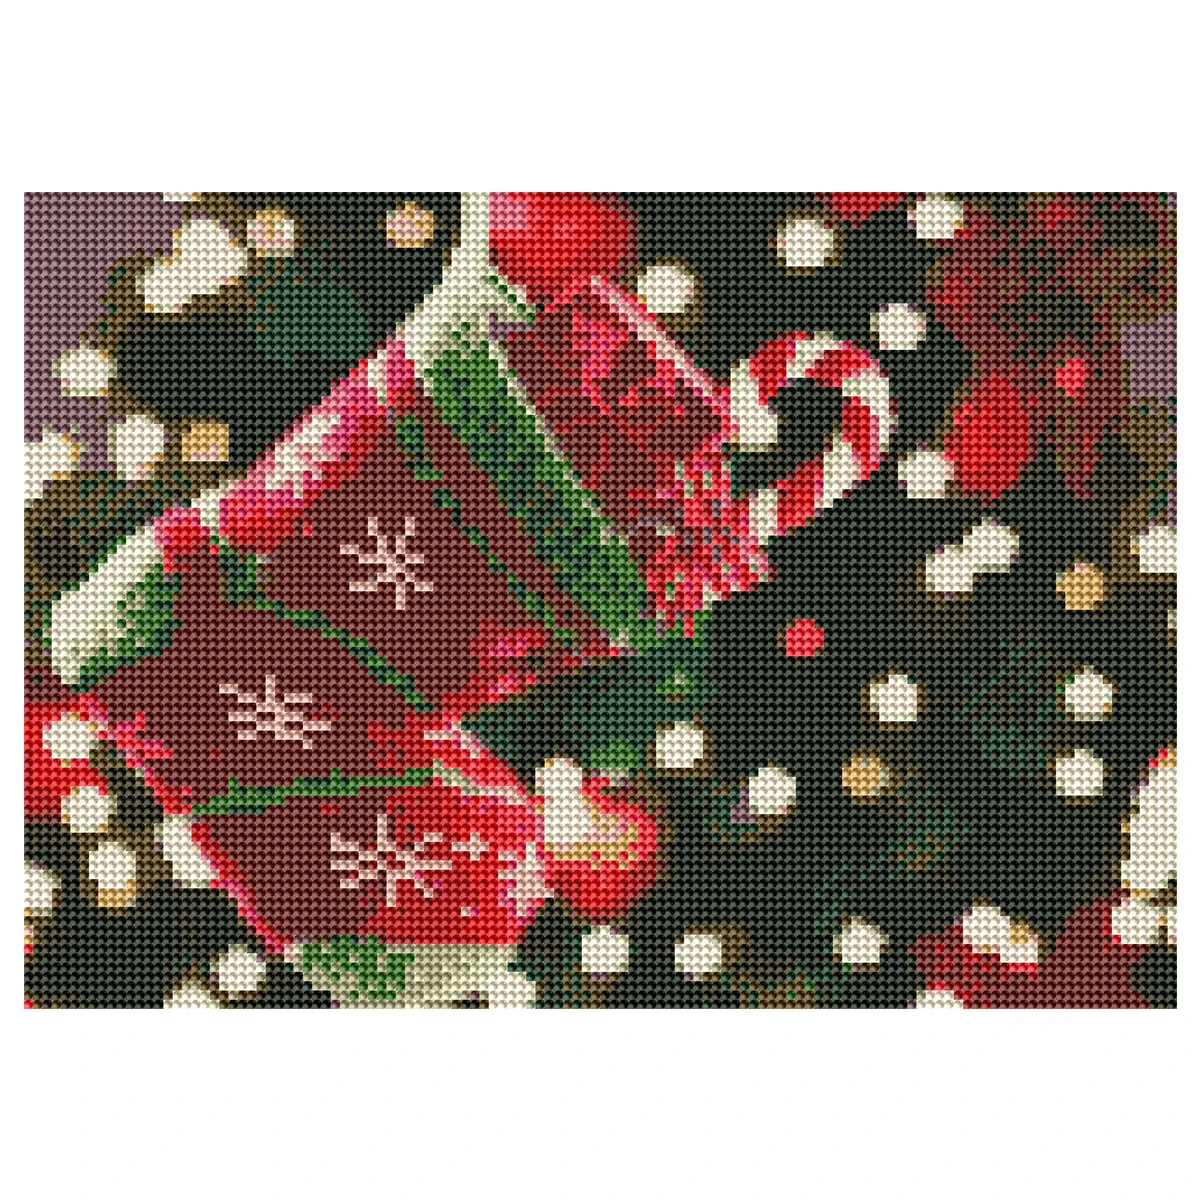 Фото на заказ! 5D регулярные гексаэдр алмазная живопись, рождественские носки декоративная живопись дома декоративная наклейка комплект